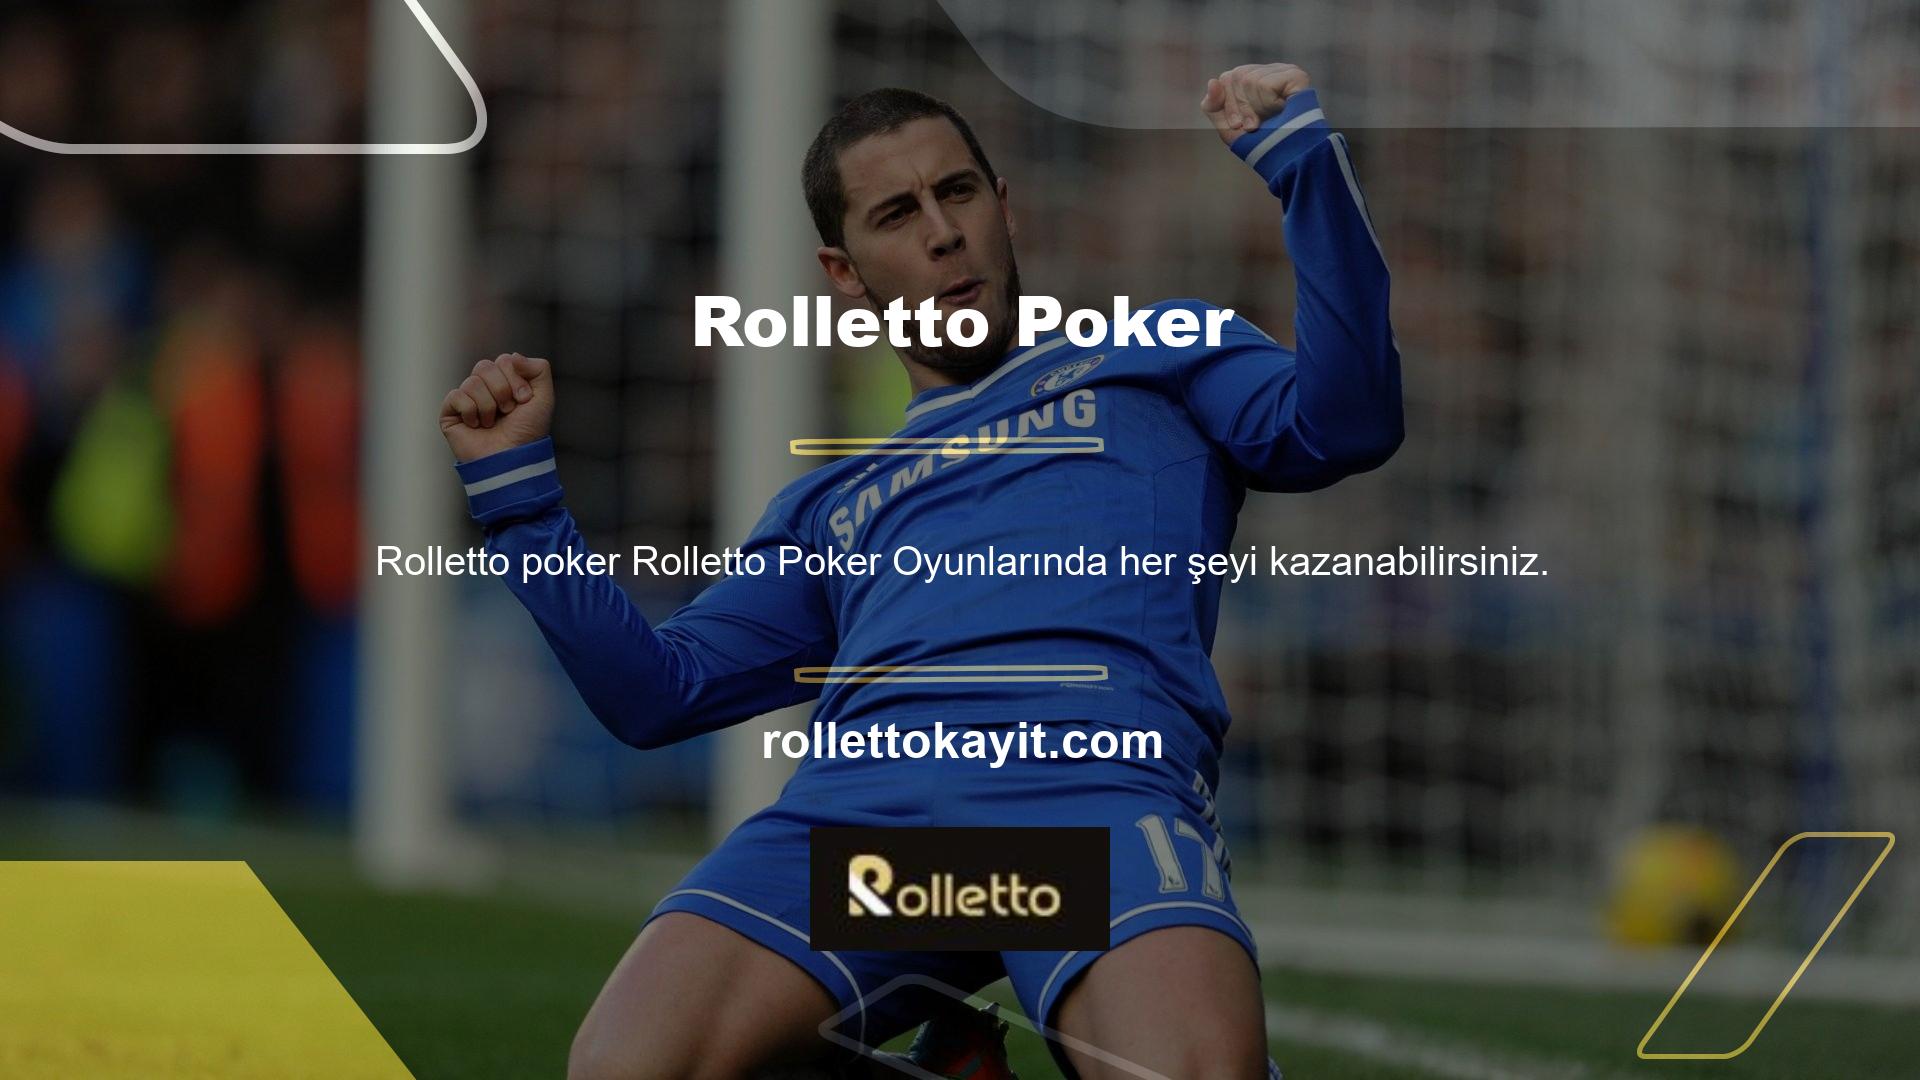 Güzel ve güvenilir krupiyelerin olduğu bir ortamda poker oyunları oynamak istiyorsanız adresiniz Rolletto olmalıdır